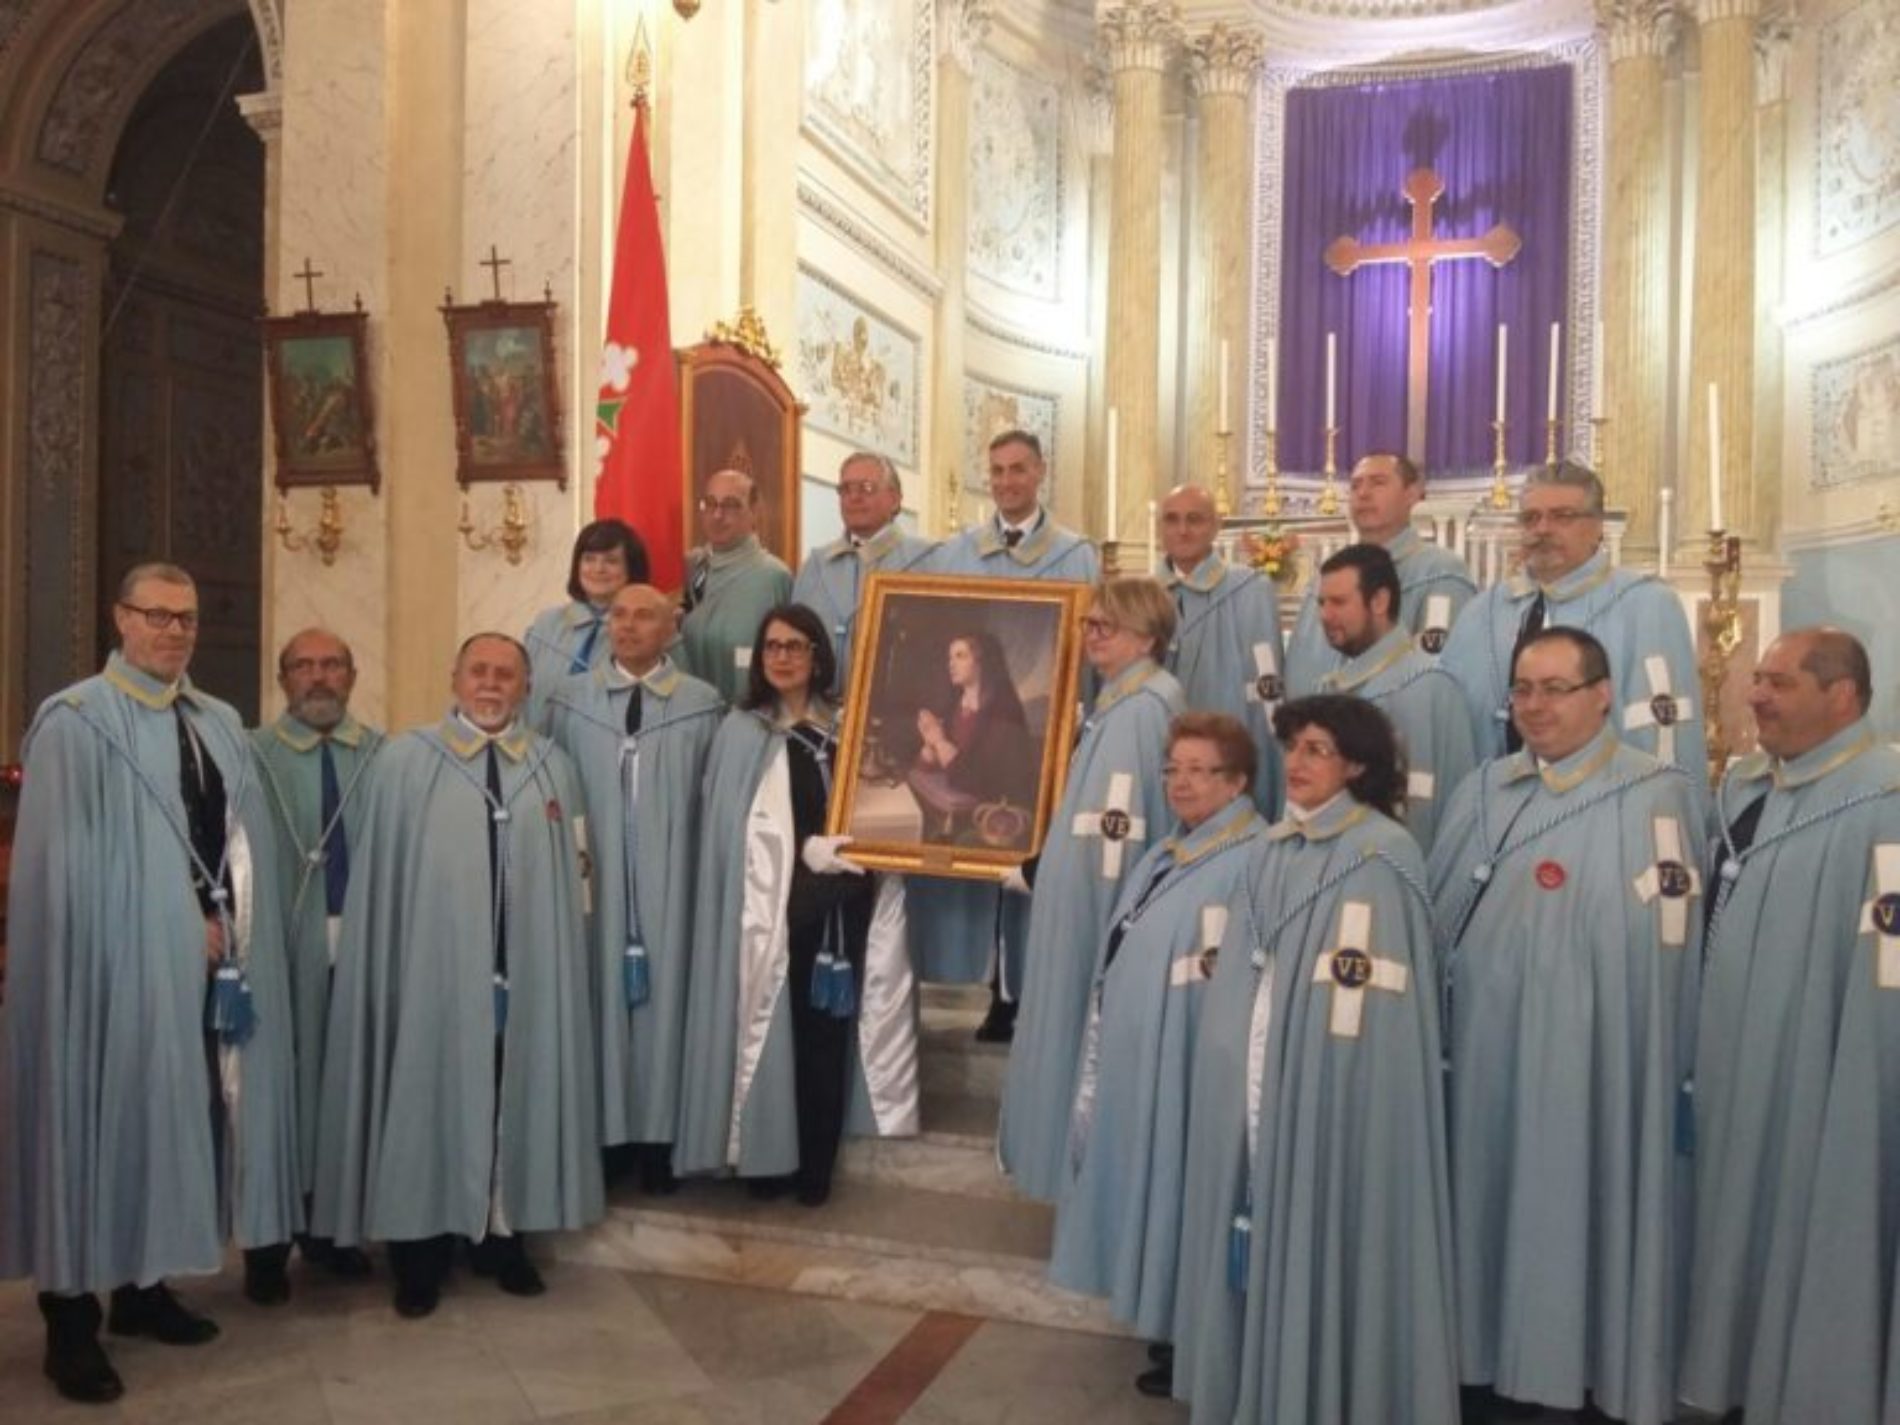 Barrafranca. Donata una tela della Beata Maria Cristina di Savoia alla chiesa Madre